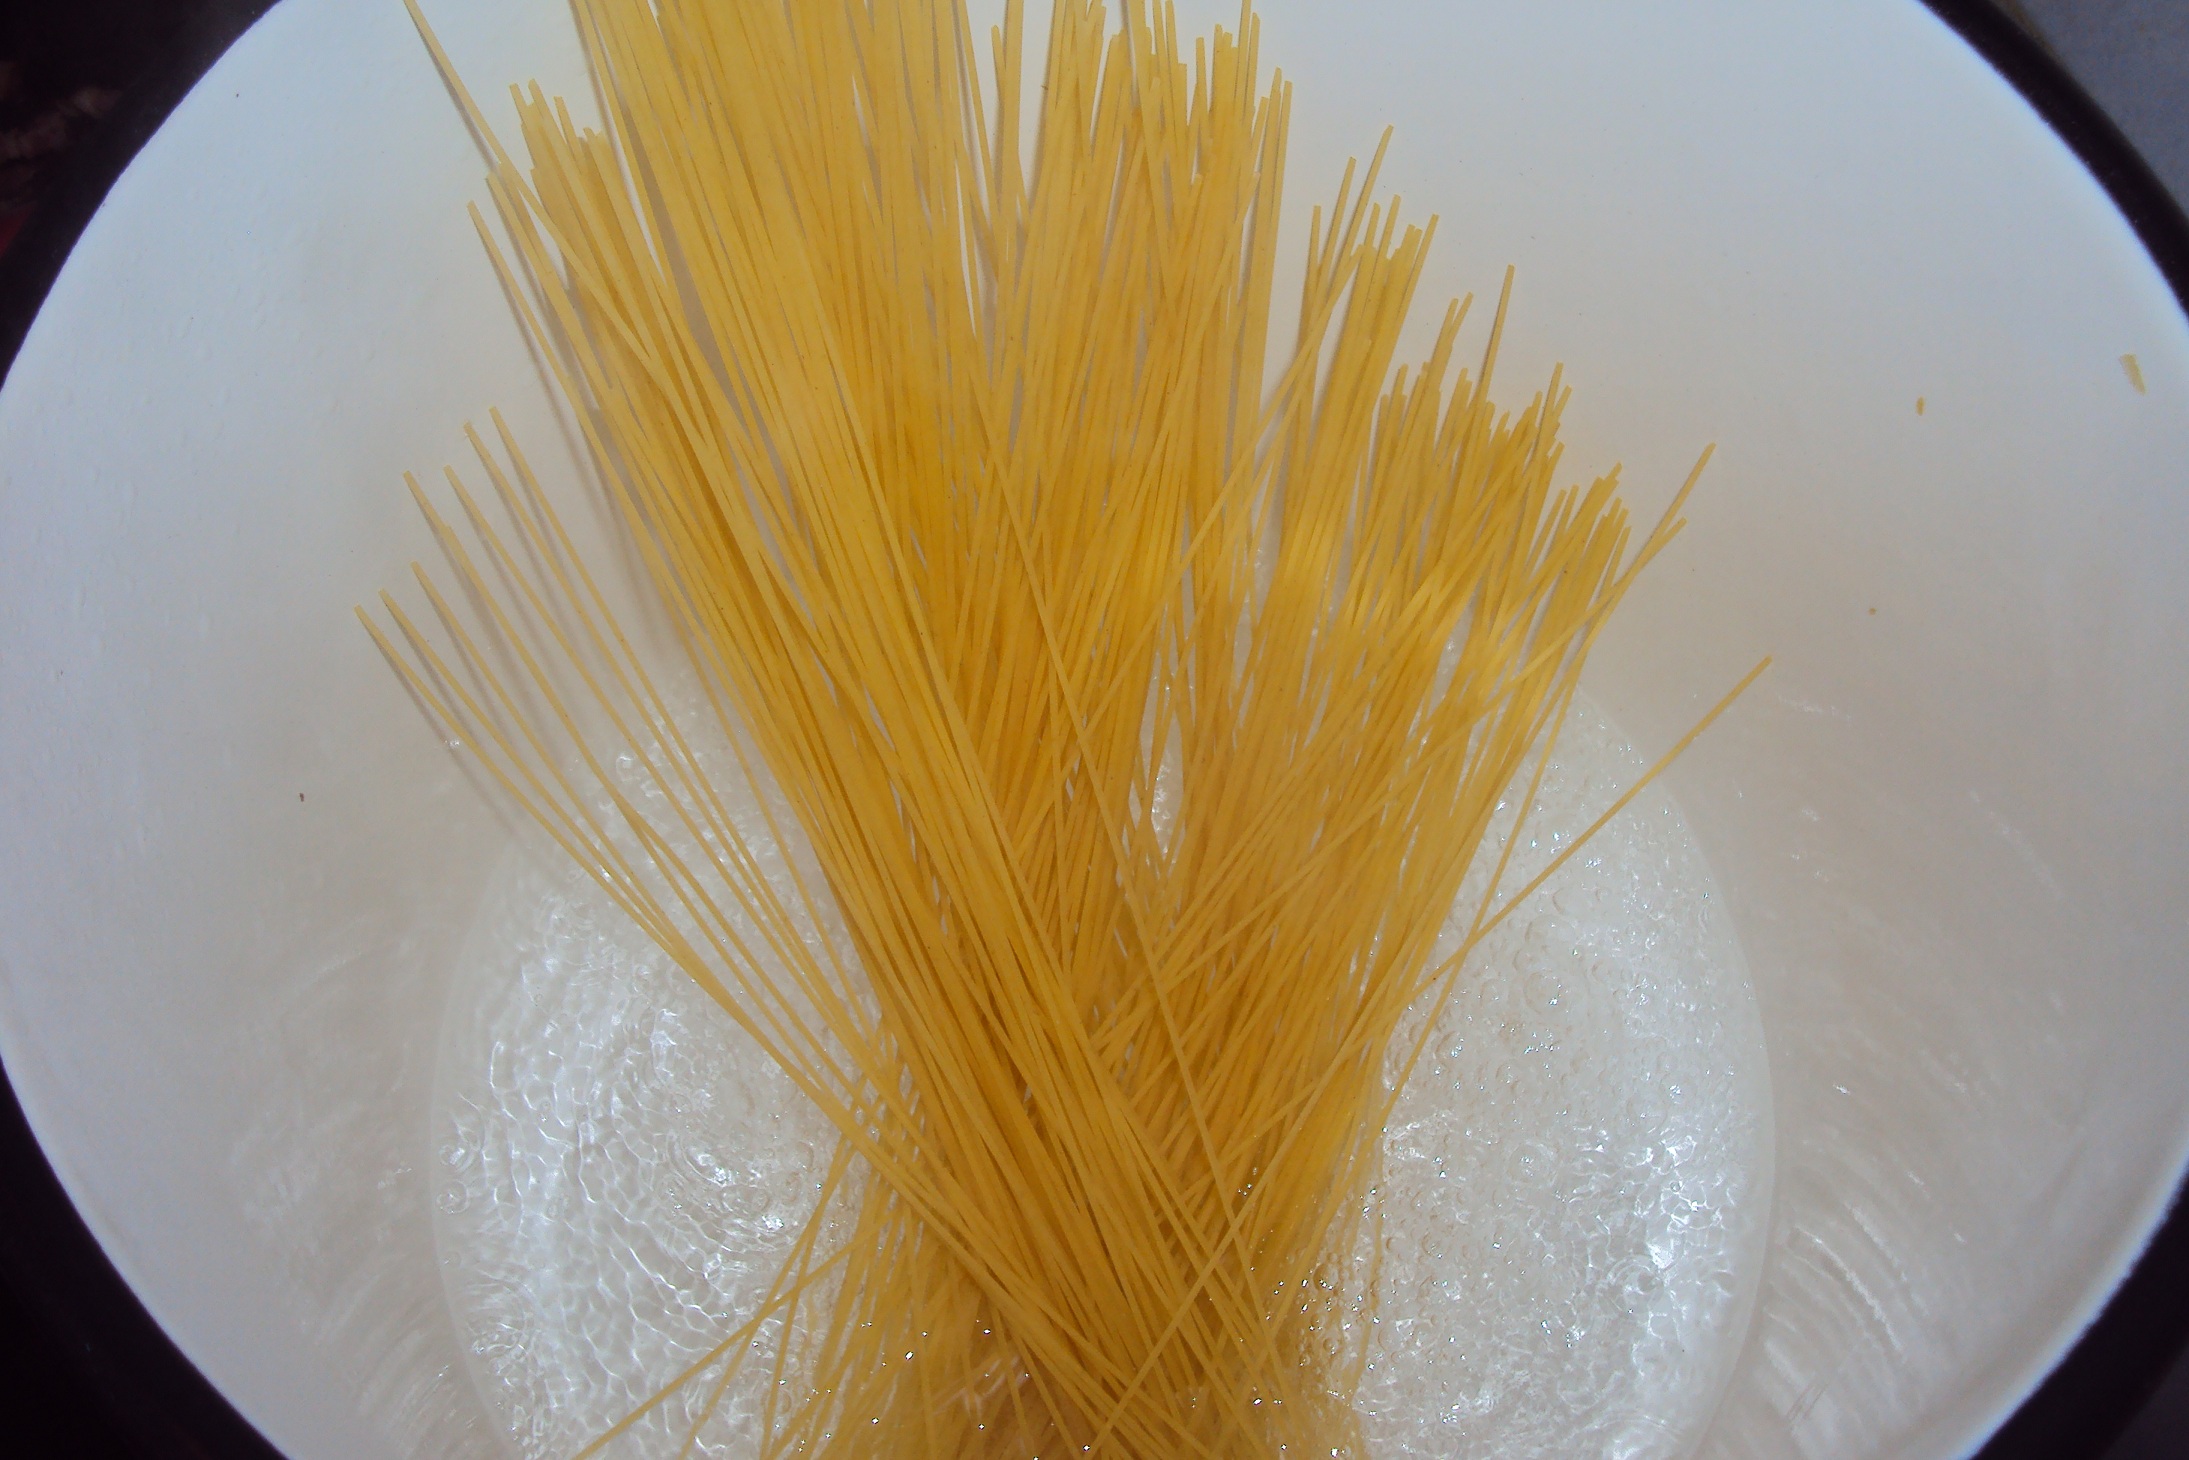 Spaghette carbonara